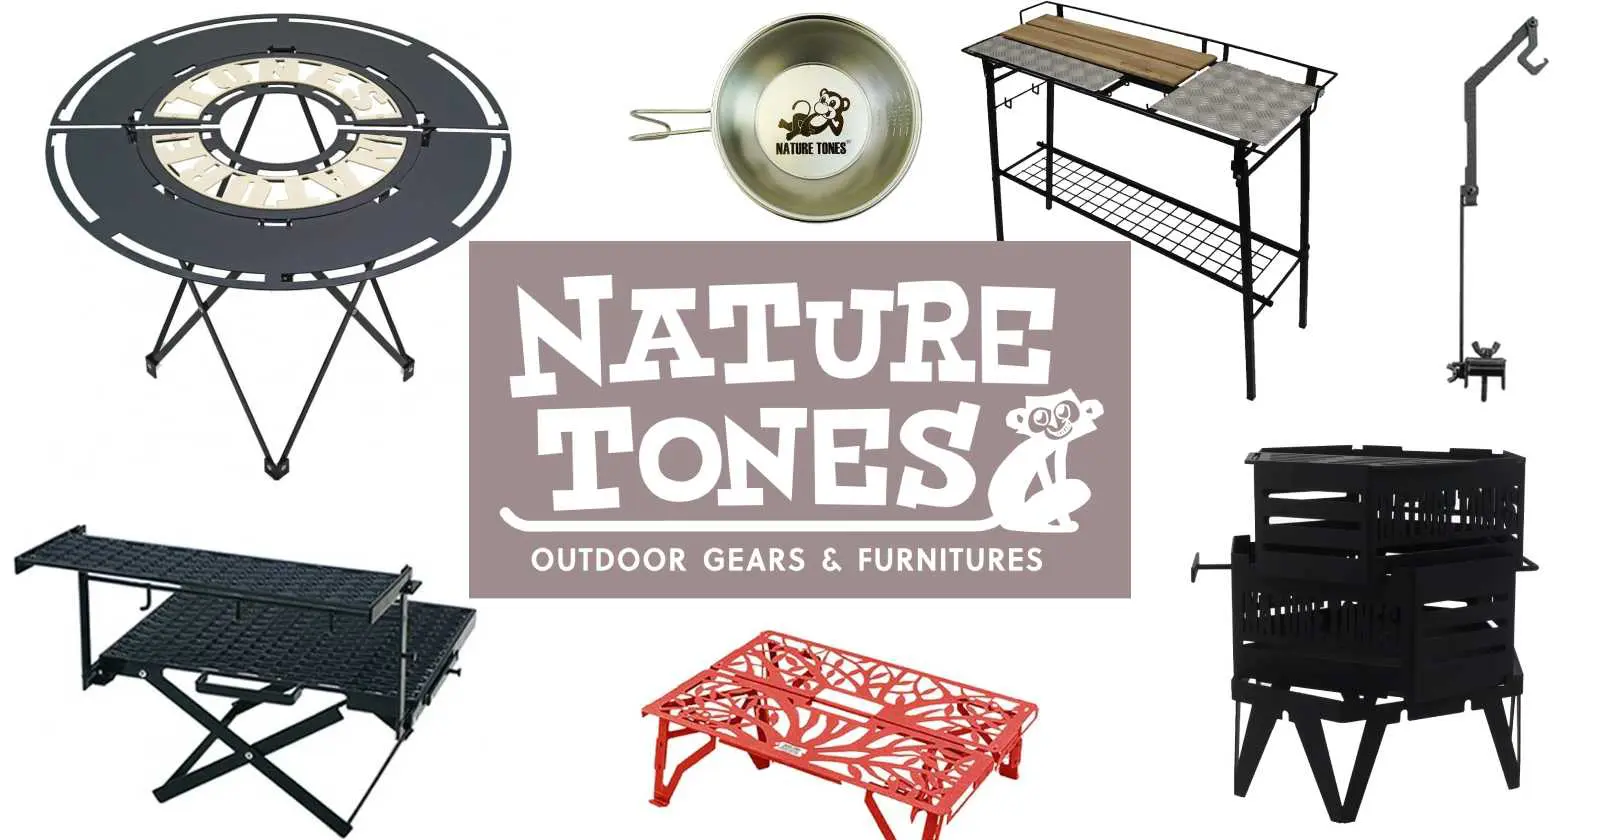 Amazonで「Nature tones」の製品をゲット！自然と調和するギア